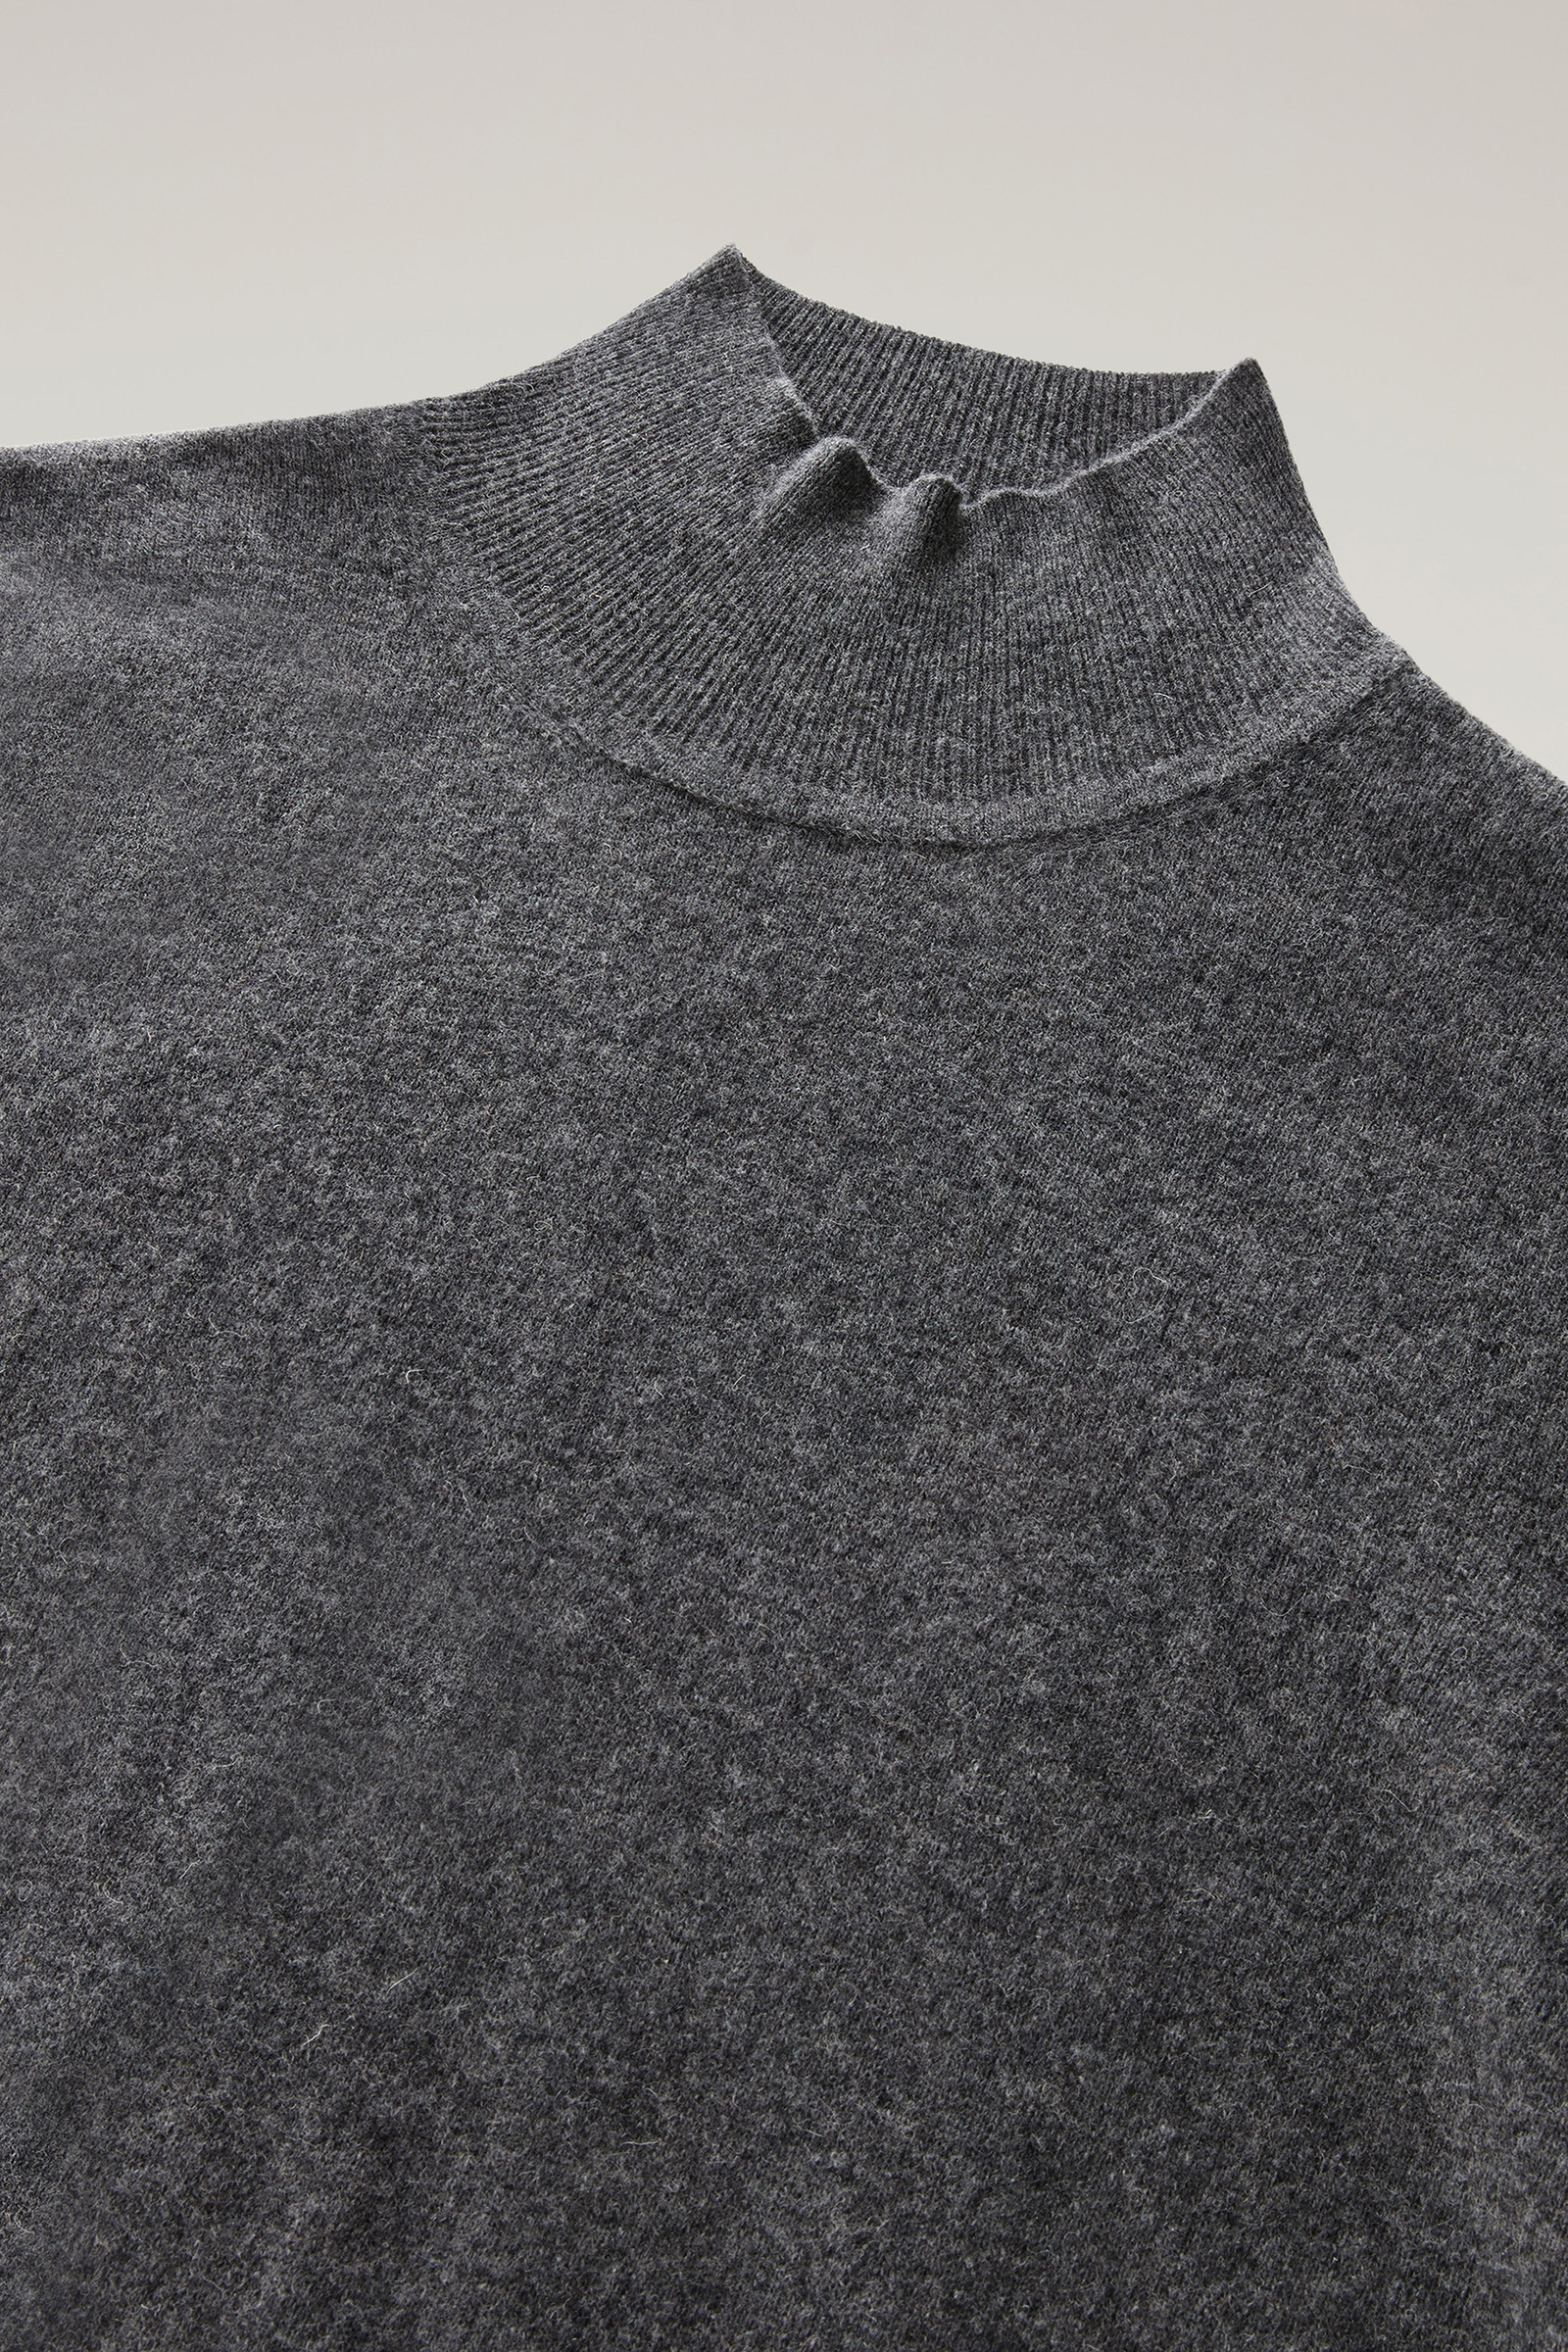 Men's Turtleneck Sweater in Merino Wool Blend Grey | Woolrich USA